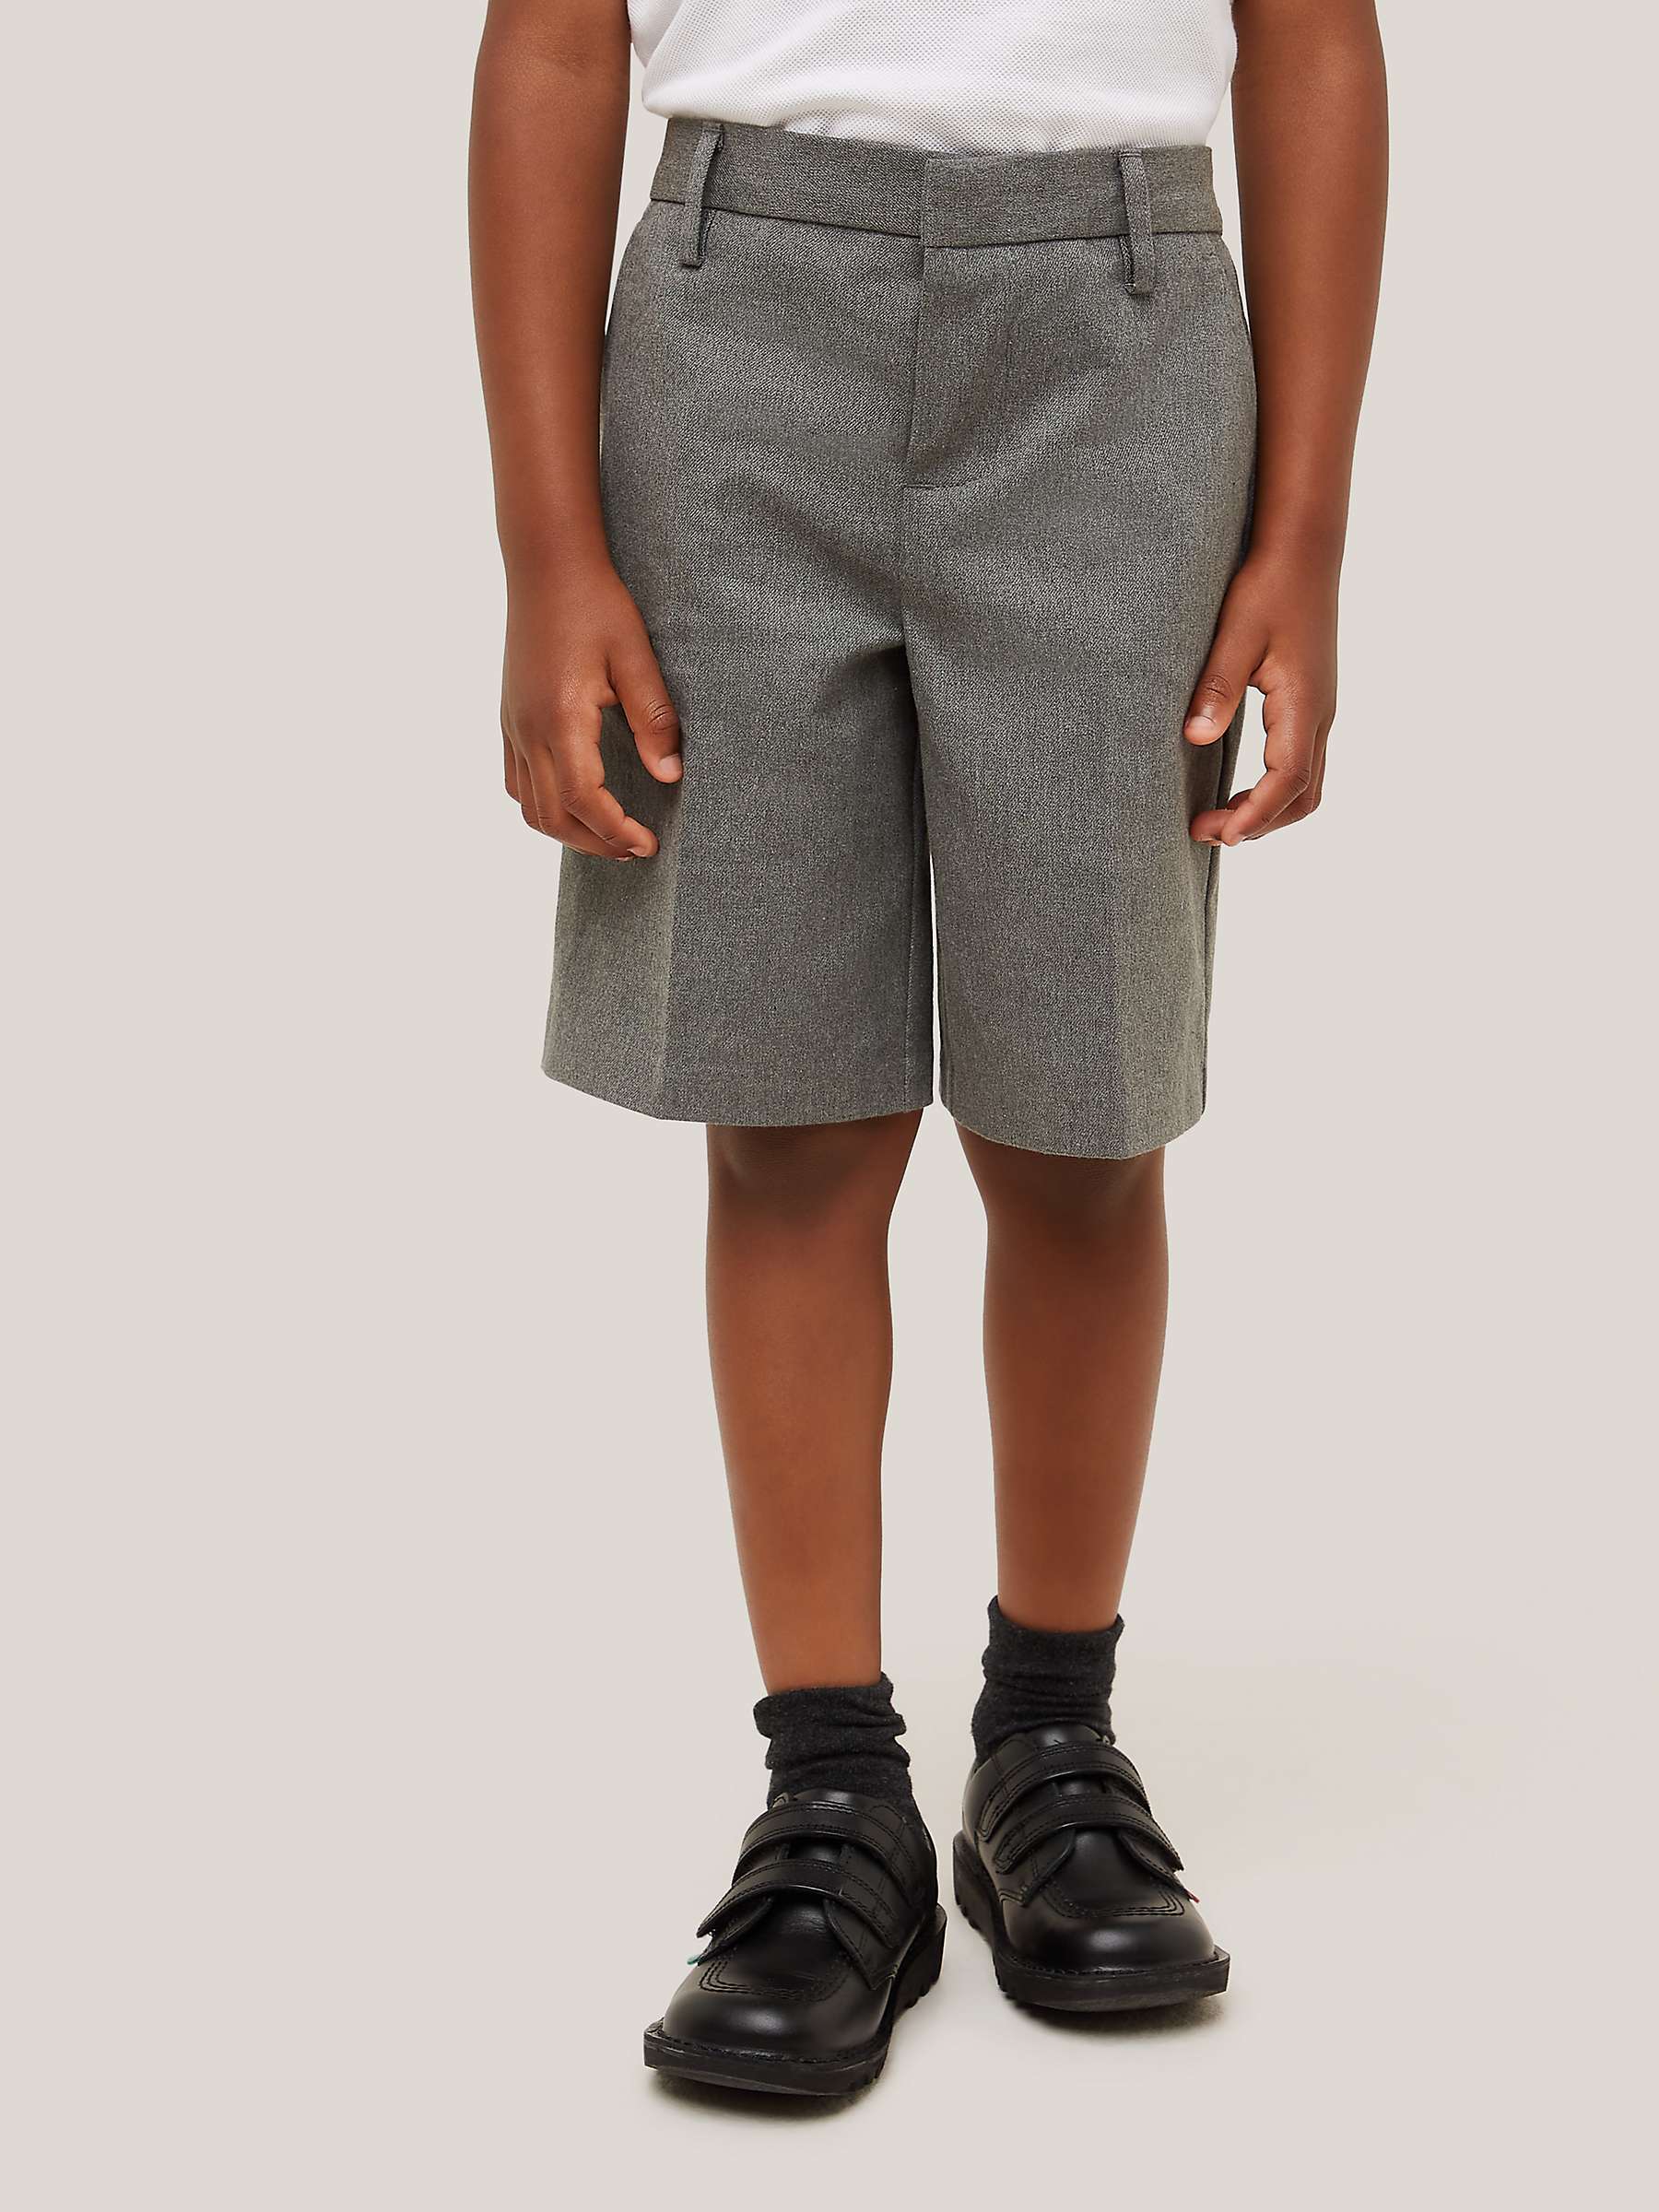 John Lewis John Lewis Boys Grey Bermuda Shorts Size 10 Years 